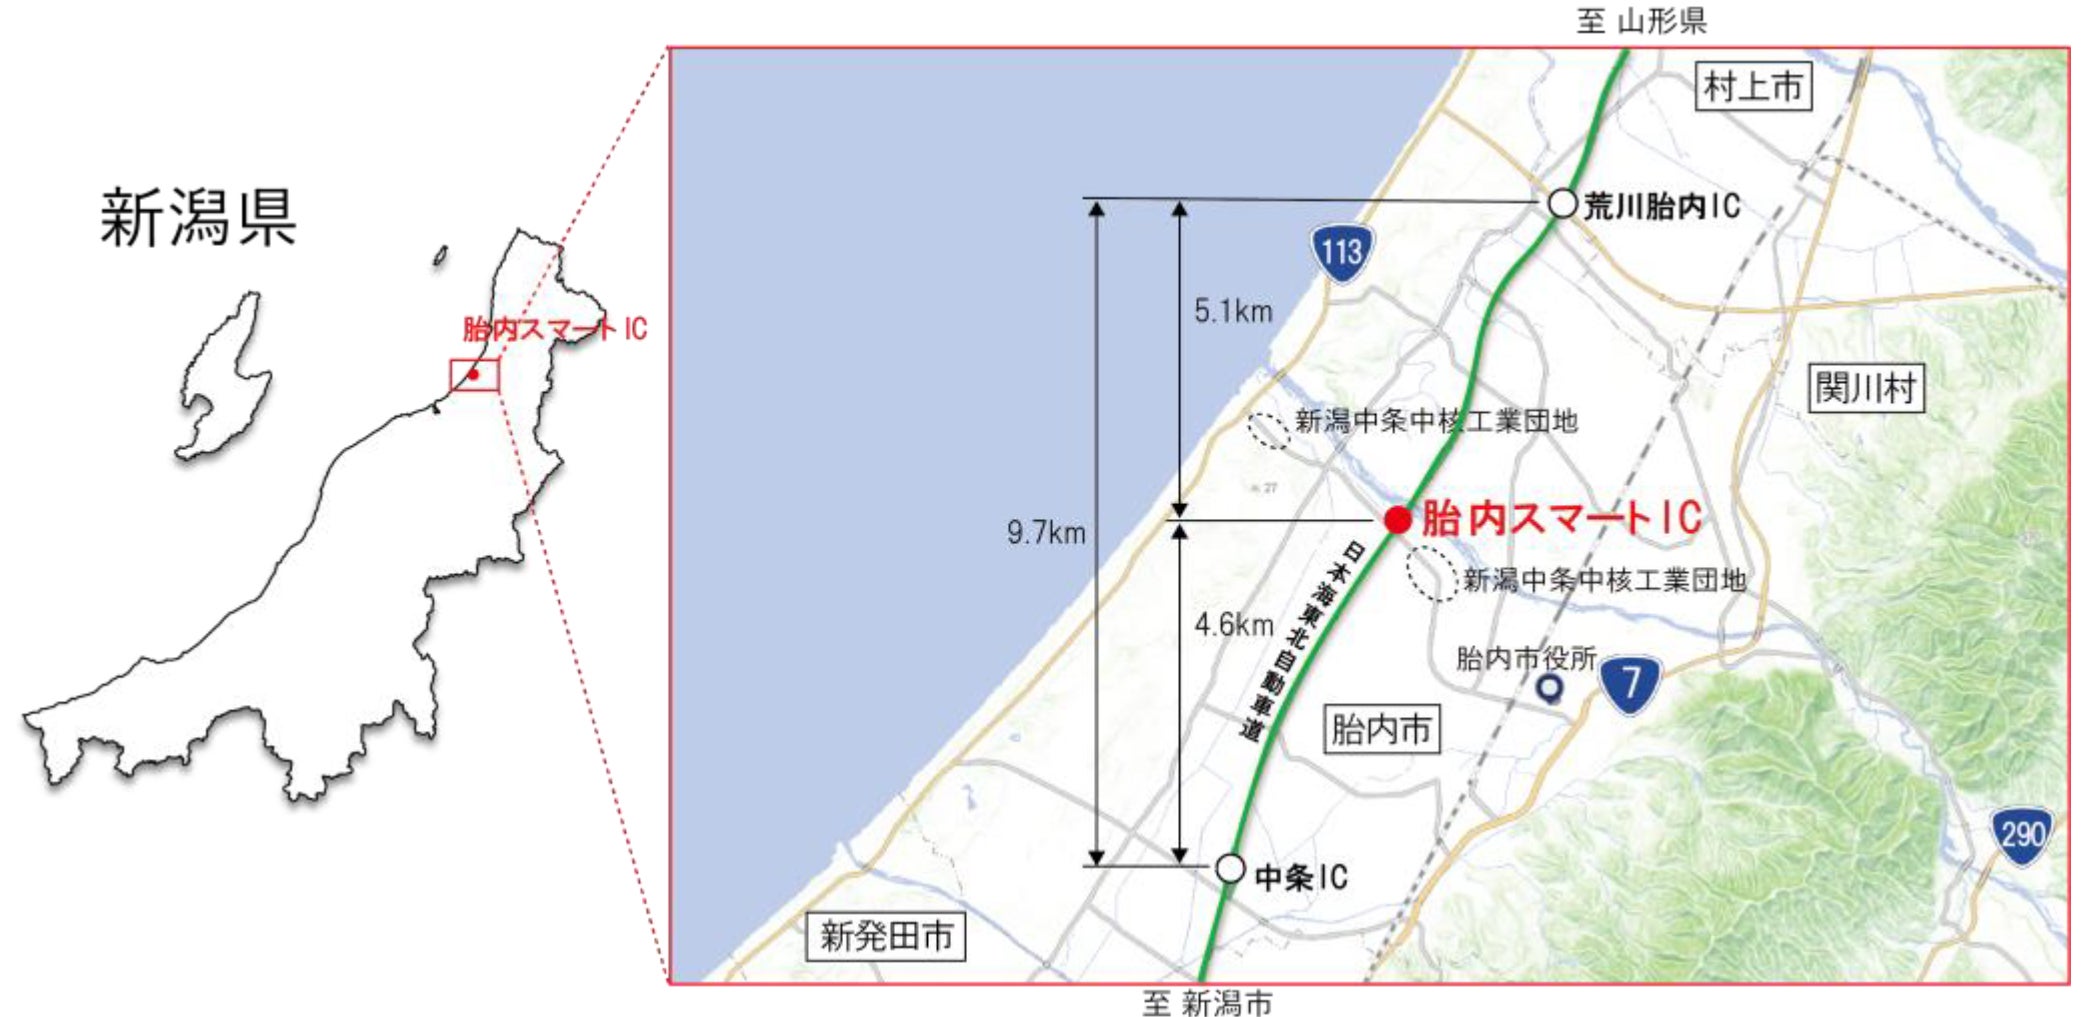 胎内スマートICは、日本海東北自動車道の中条ICと荒川胎内ICのほぼ中間に設置された本線接続型のハーフIC。